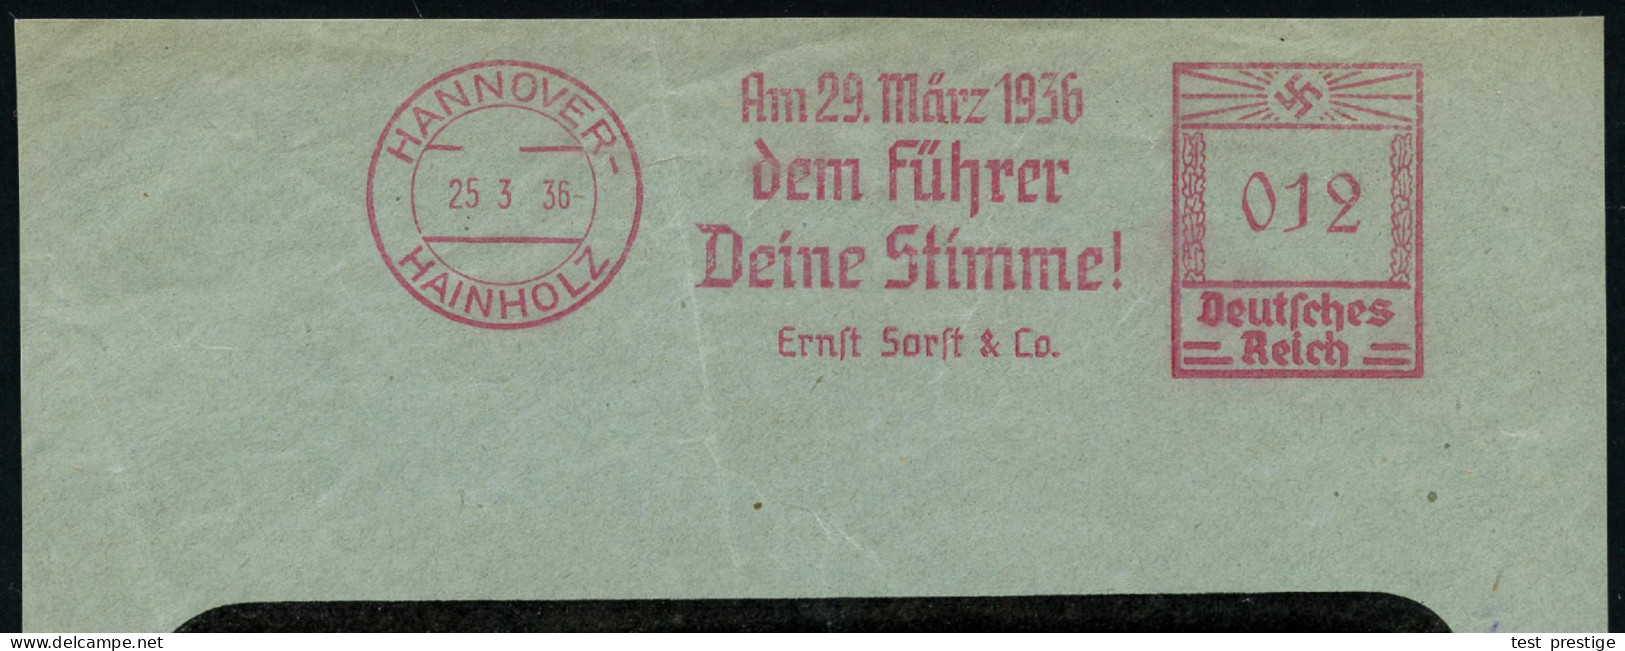 HANNOVER-/ HAINHOLZ/ Am 29.März 1936/ Dem Führer/ Deine Stimme!/ Ernst Sorft & Co. 1936 (25.3.) Sehr Seltener AFS Franco - Other